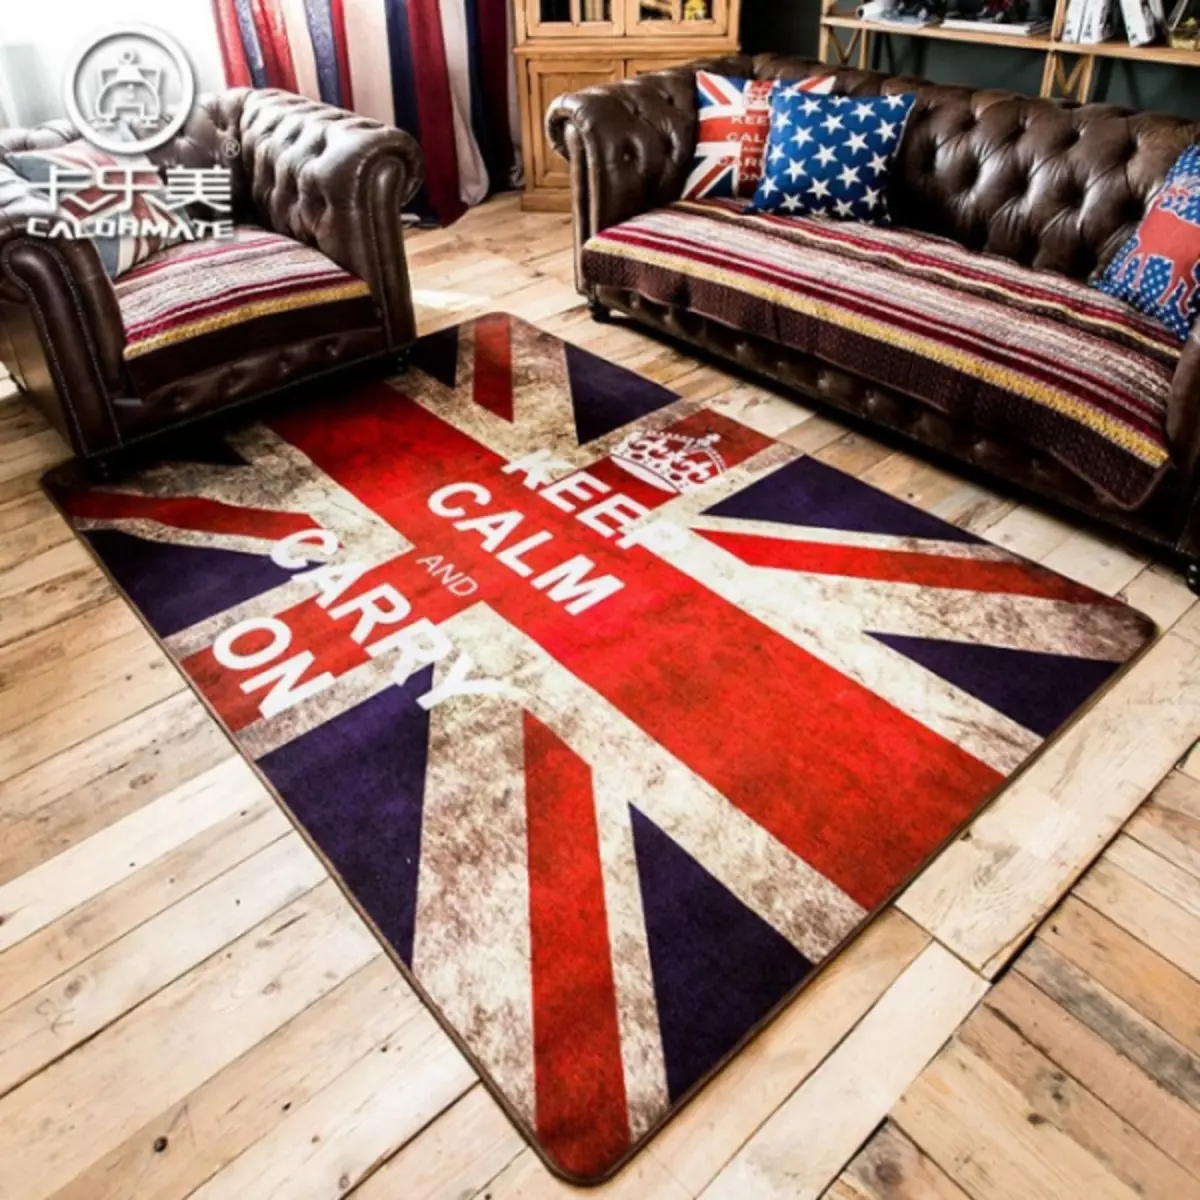 Pli proksime al Londono: Brita Flago en la Interno (Union Jack - 80 fotoj)